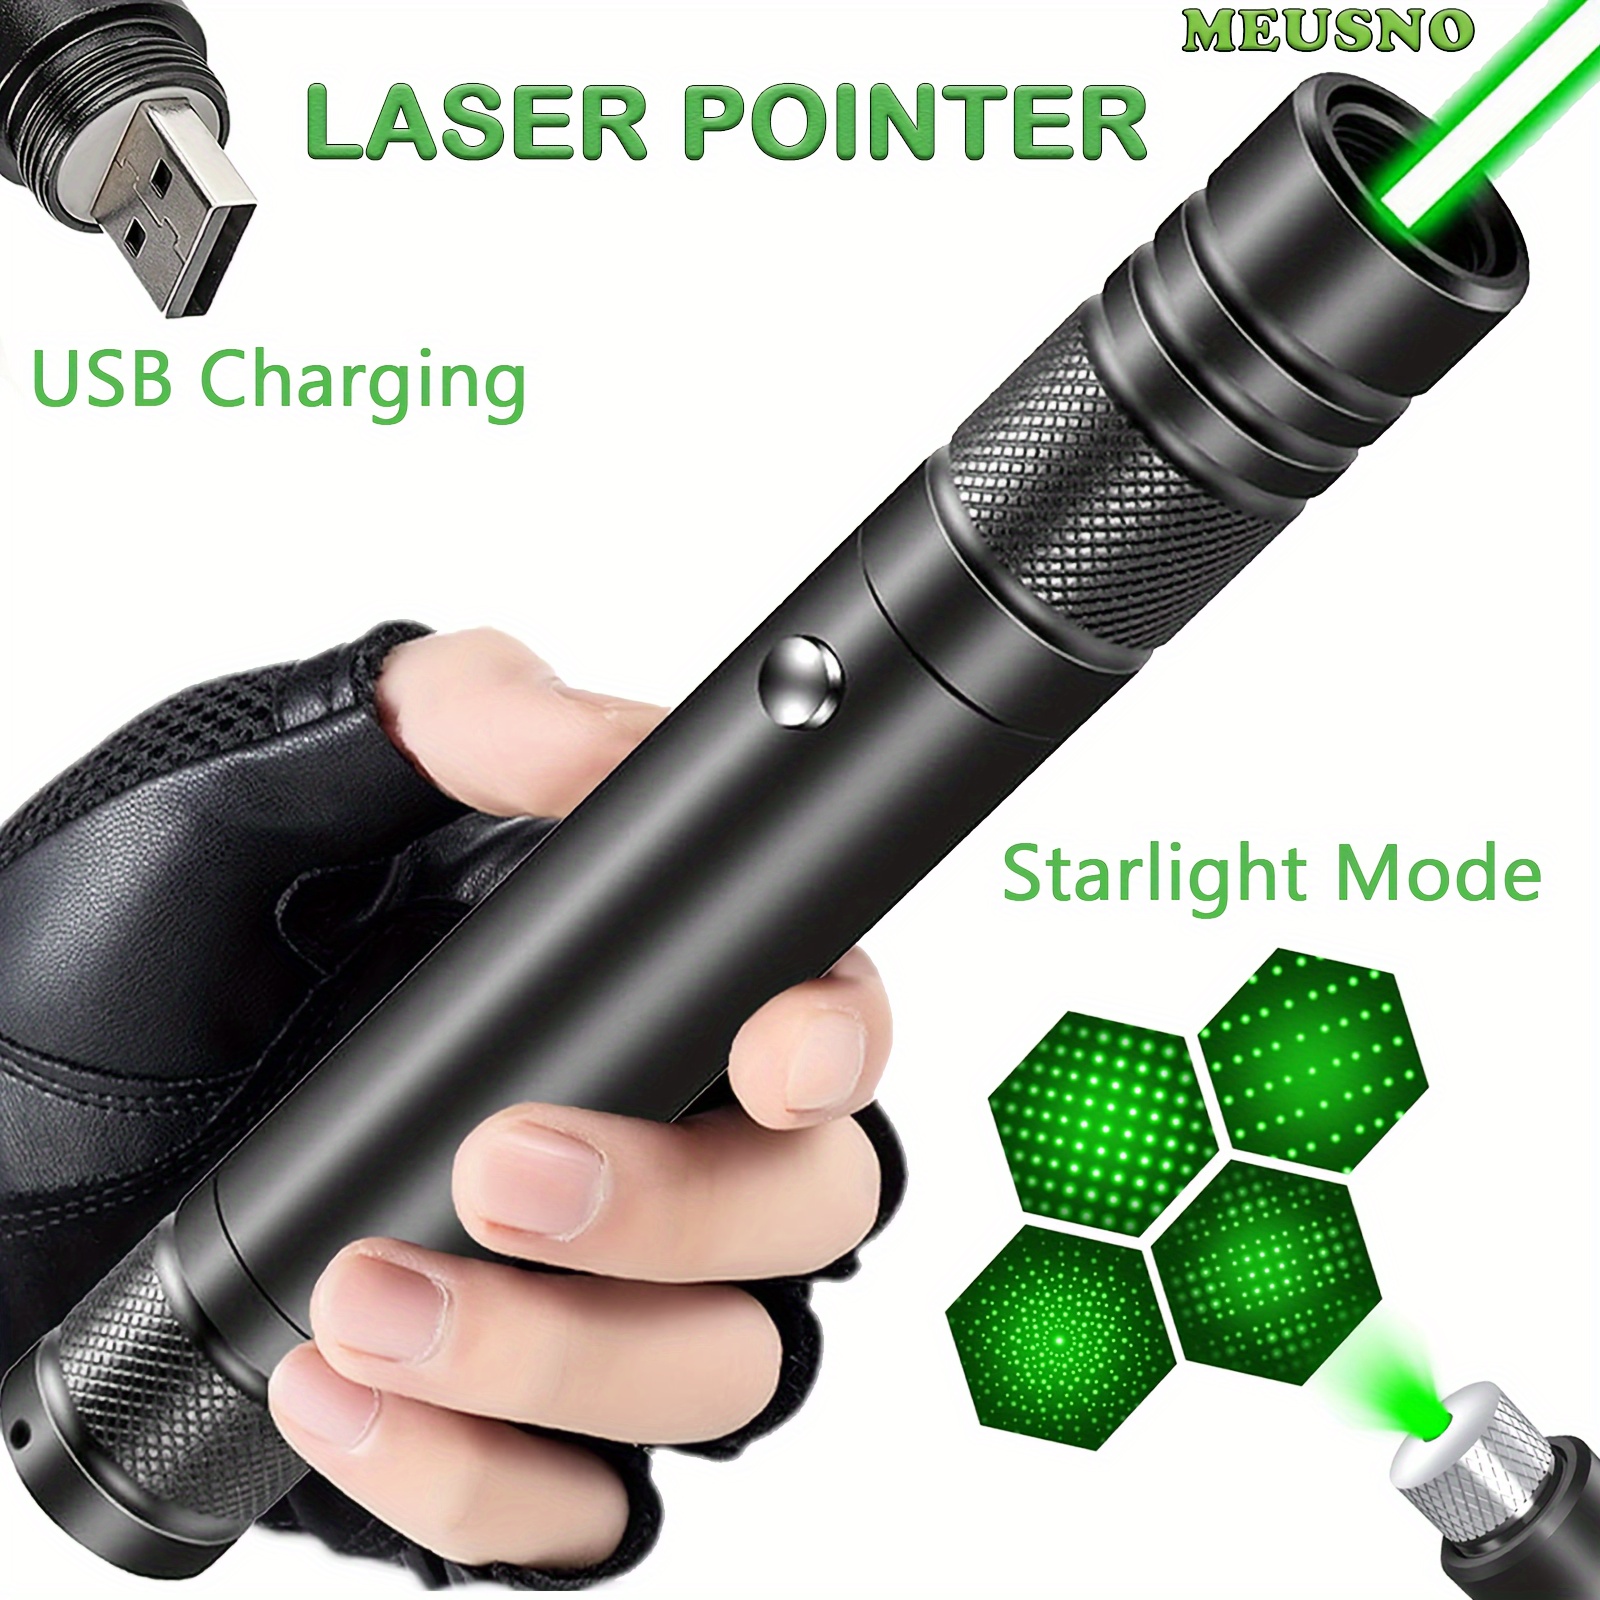 Puntero Laser Verde – Laser 303 Inalambrico - Promart